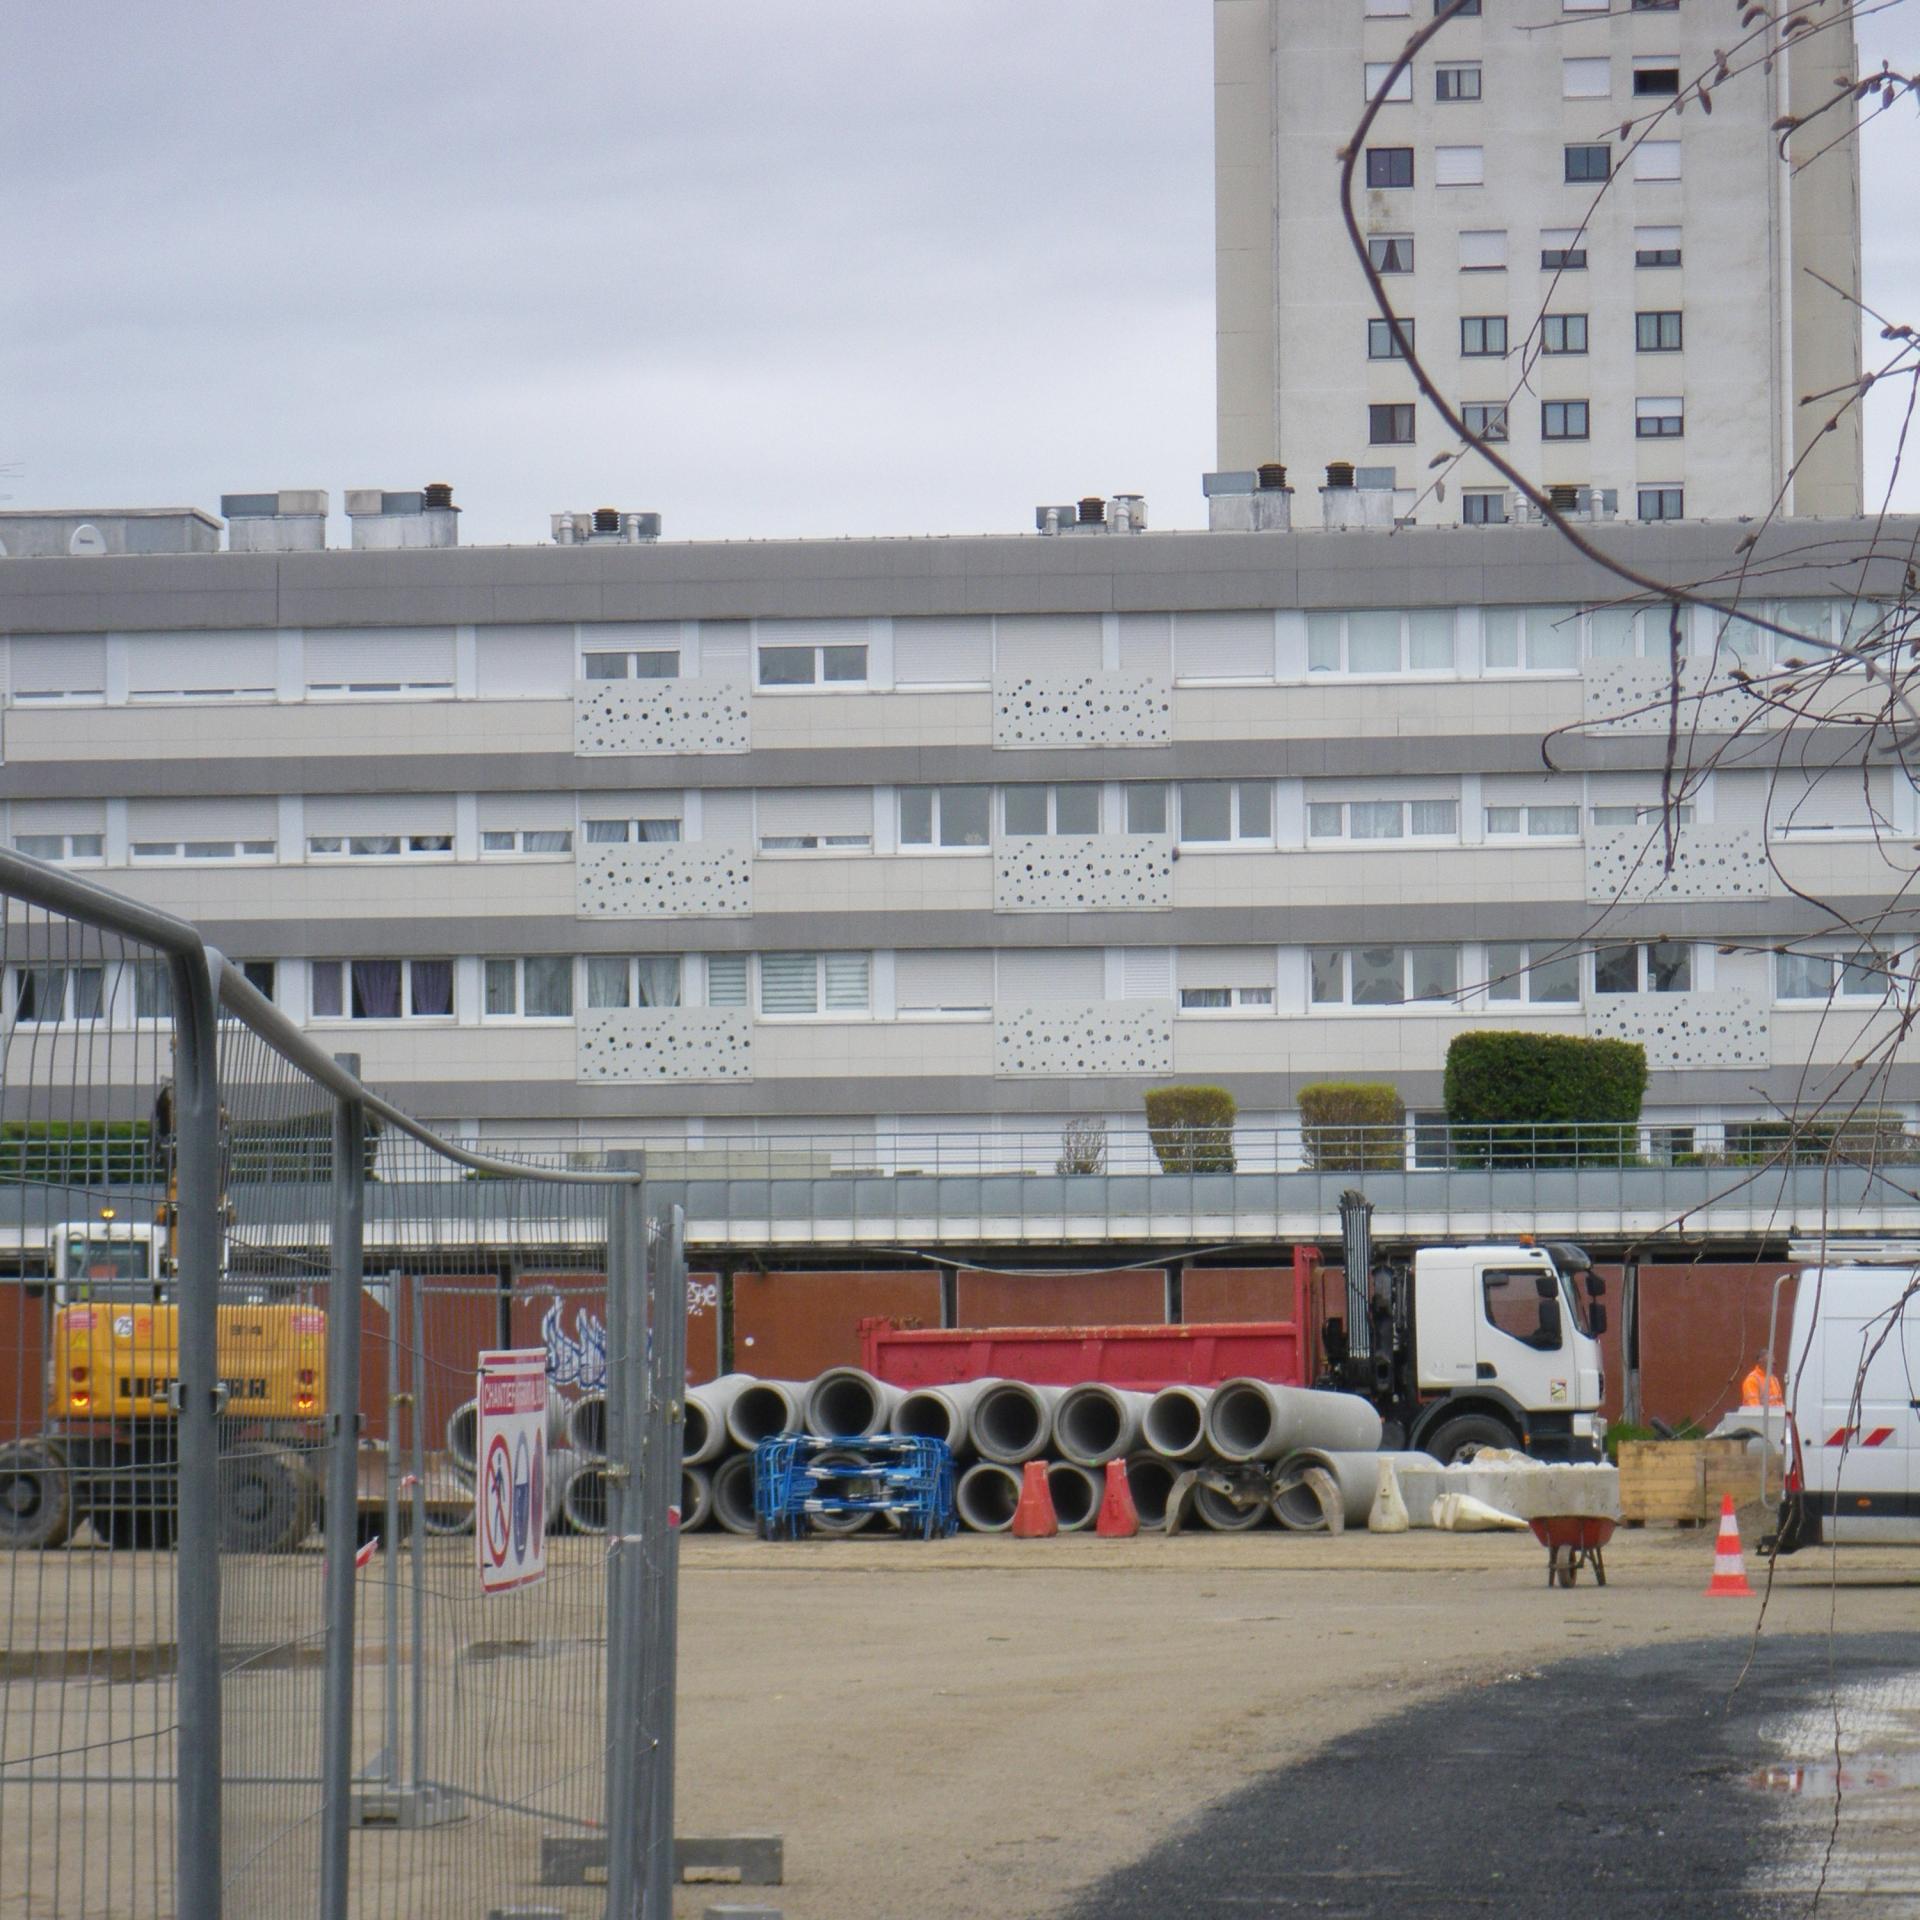 PENSER LOCAL : Renouvellement urbain du quartier de Bellevue à Nantes: Déconstruire ou rénover ?